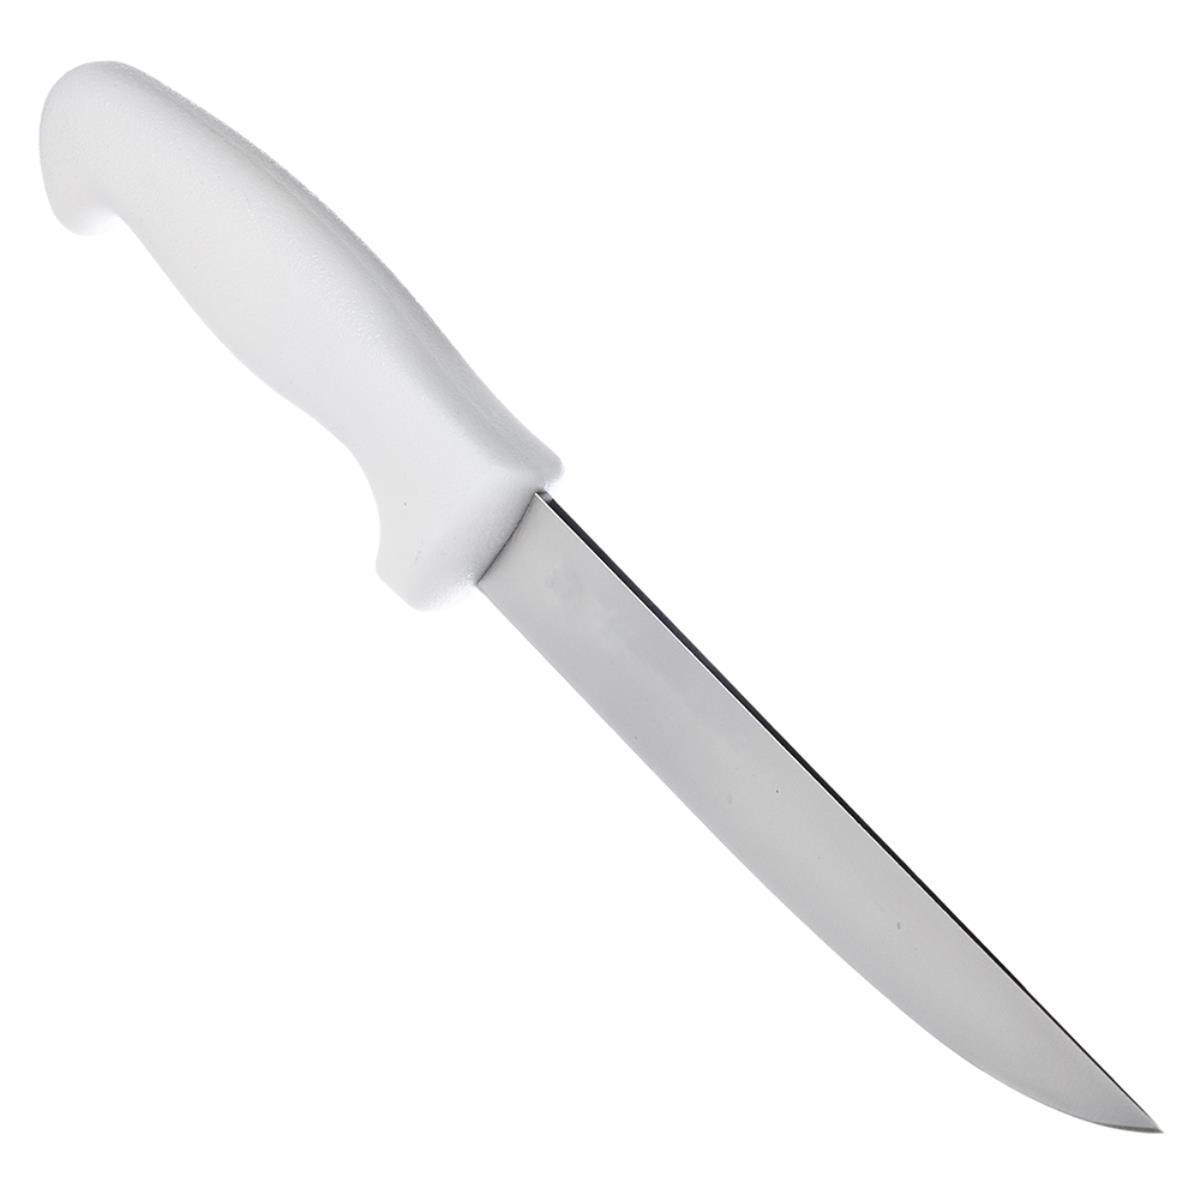 Нож кухонный Professional 15 см 24605/086 (871-053) TRAMONTINA нож кухонный professional master 12 7 см разделочный 24605 085 871 107 tramontina